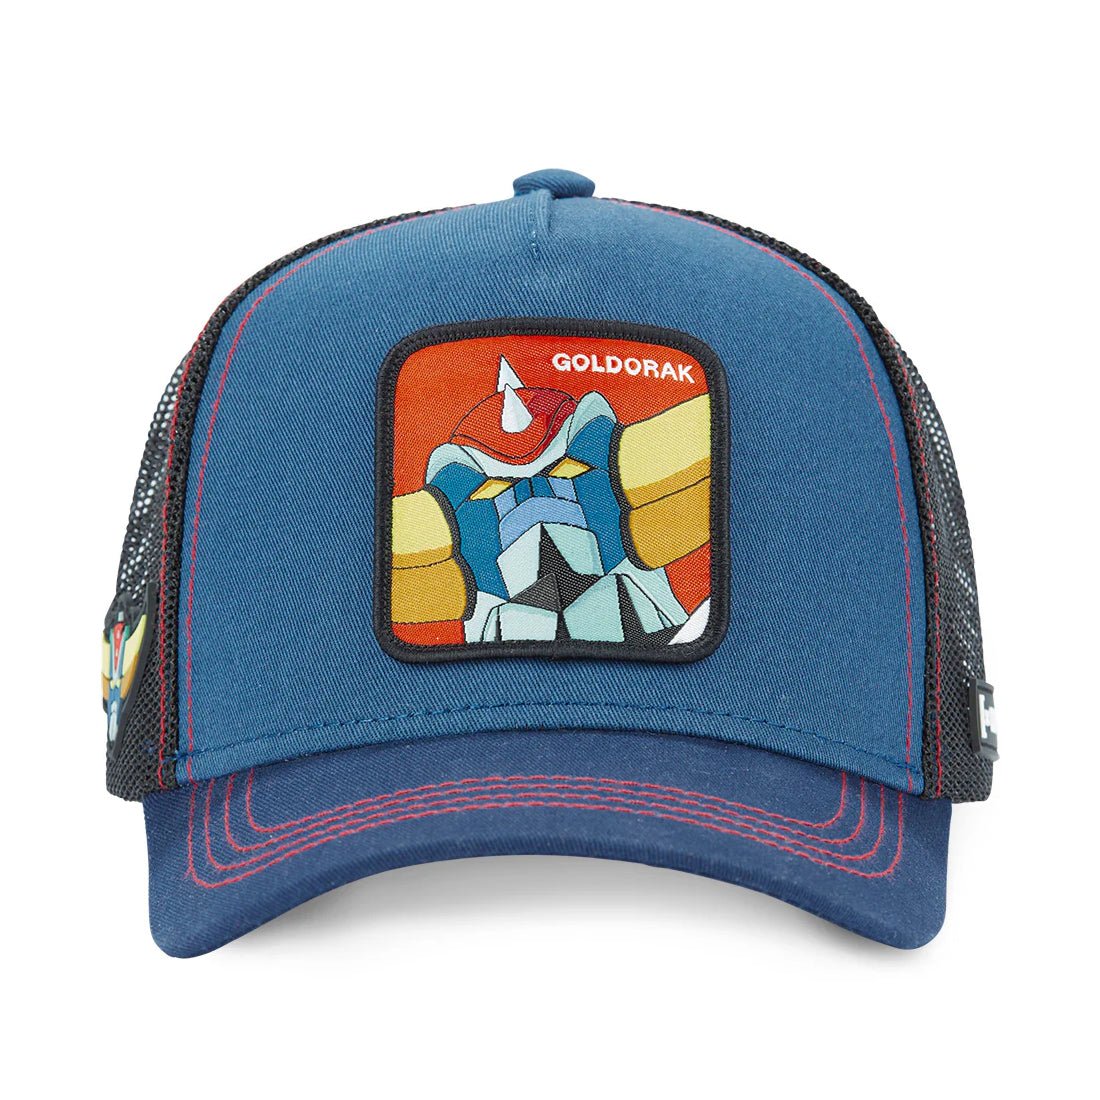 Queue Caps Goldorak Rak Cap - قبعة - Store 974 | ستور ٩٧٤